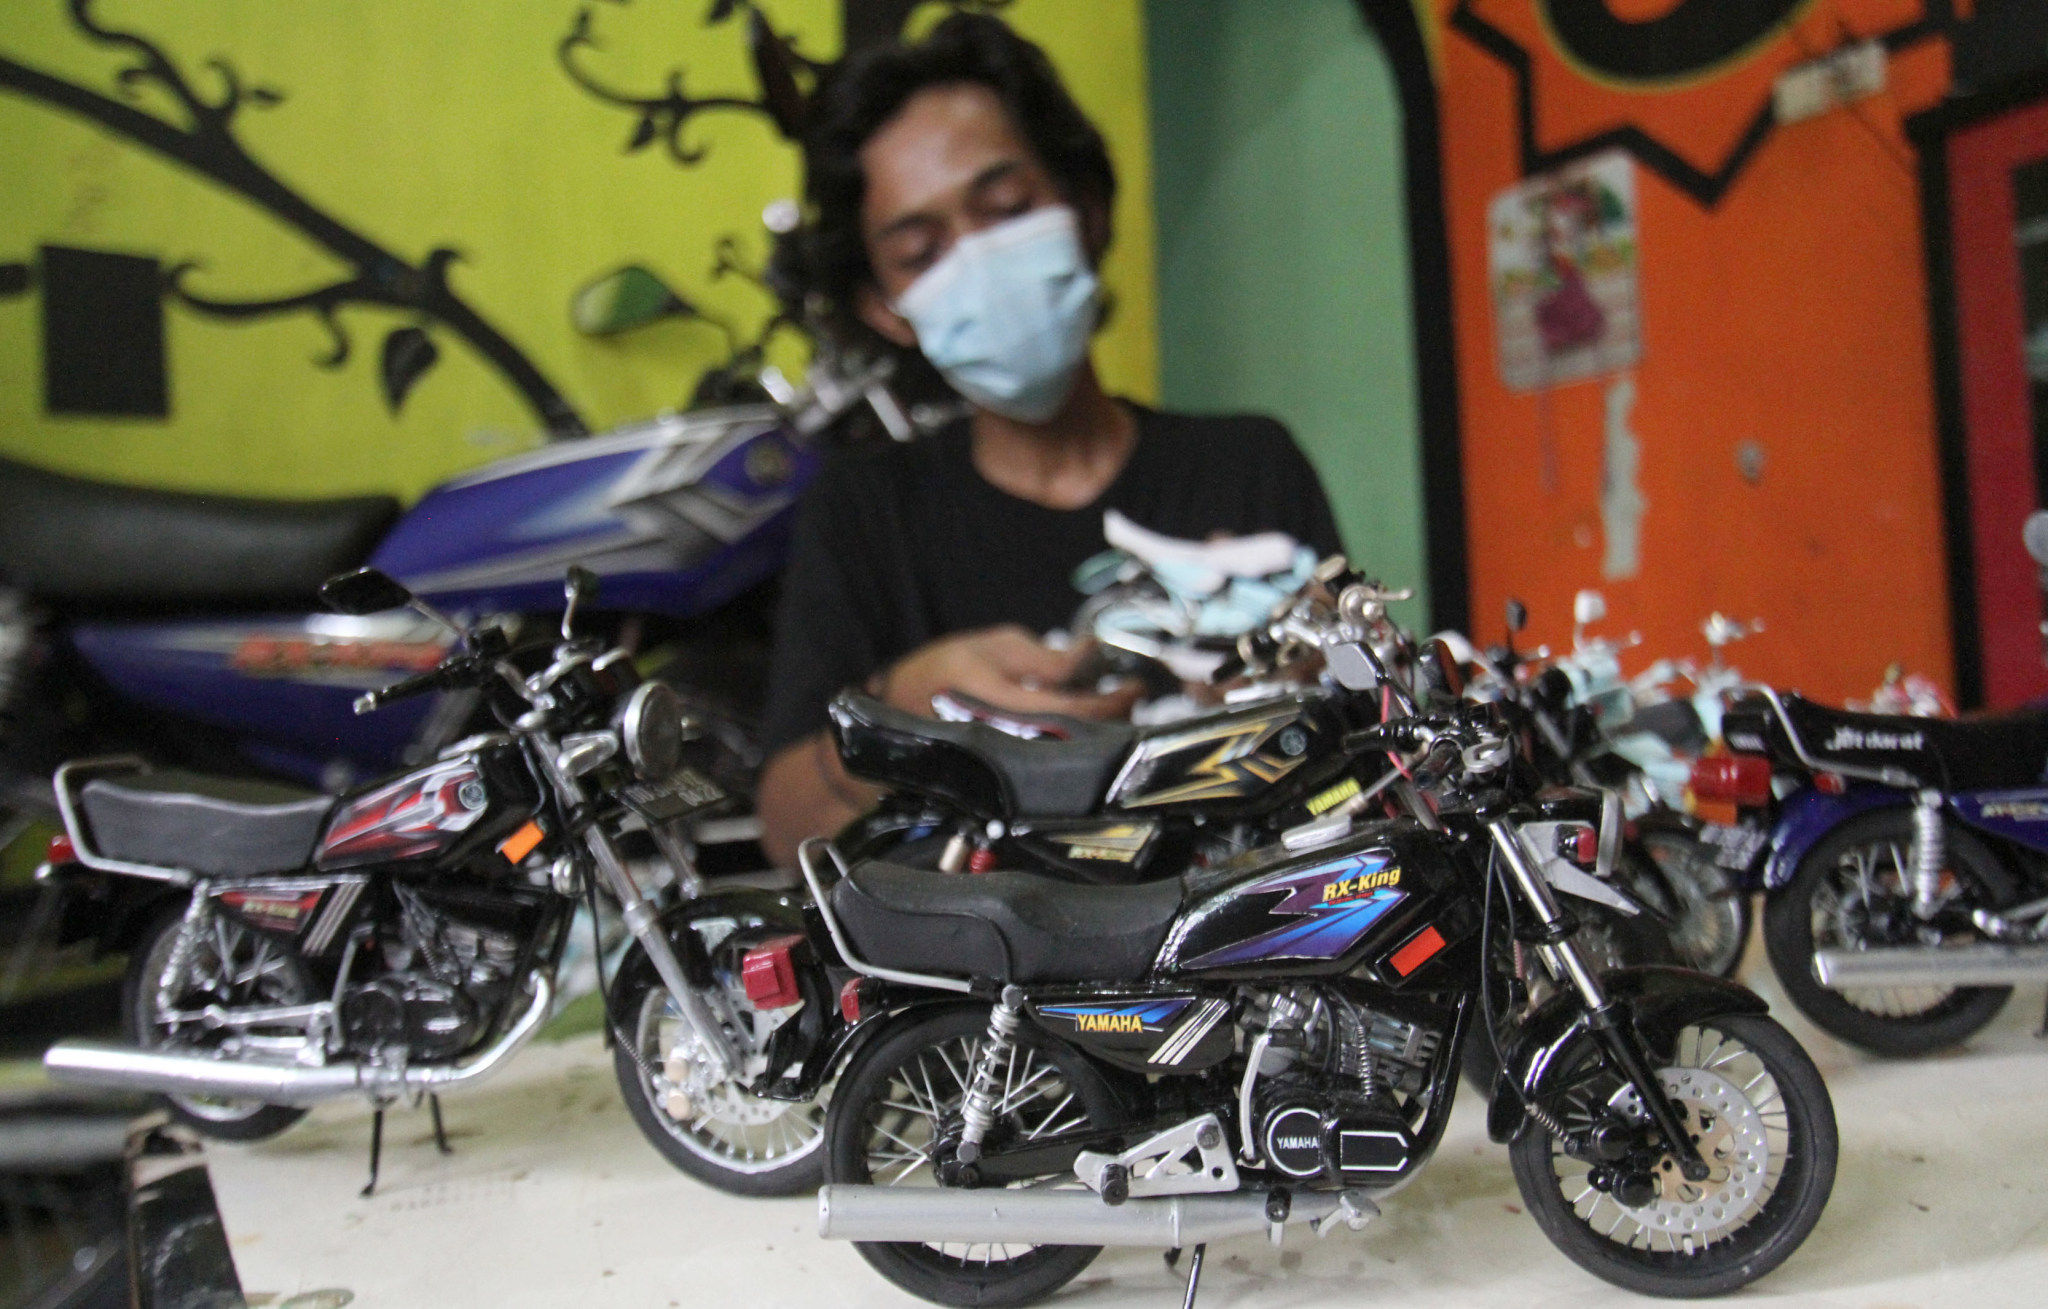 <p>Wawank menunjukkan sejumlah kreasi miniatur sepeda motor yang terbuat dari barang bekas di rumahnya kawasan Ciputat, Tangerang Selatan, Banten, Minggu, 18 Oktober 2020. Foto: Panji Asmoro/TrenAsia</p>
